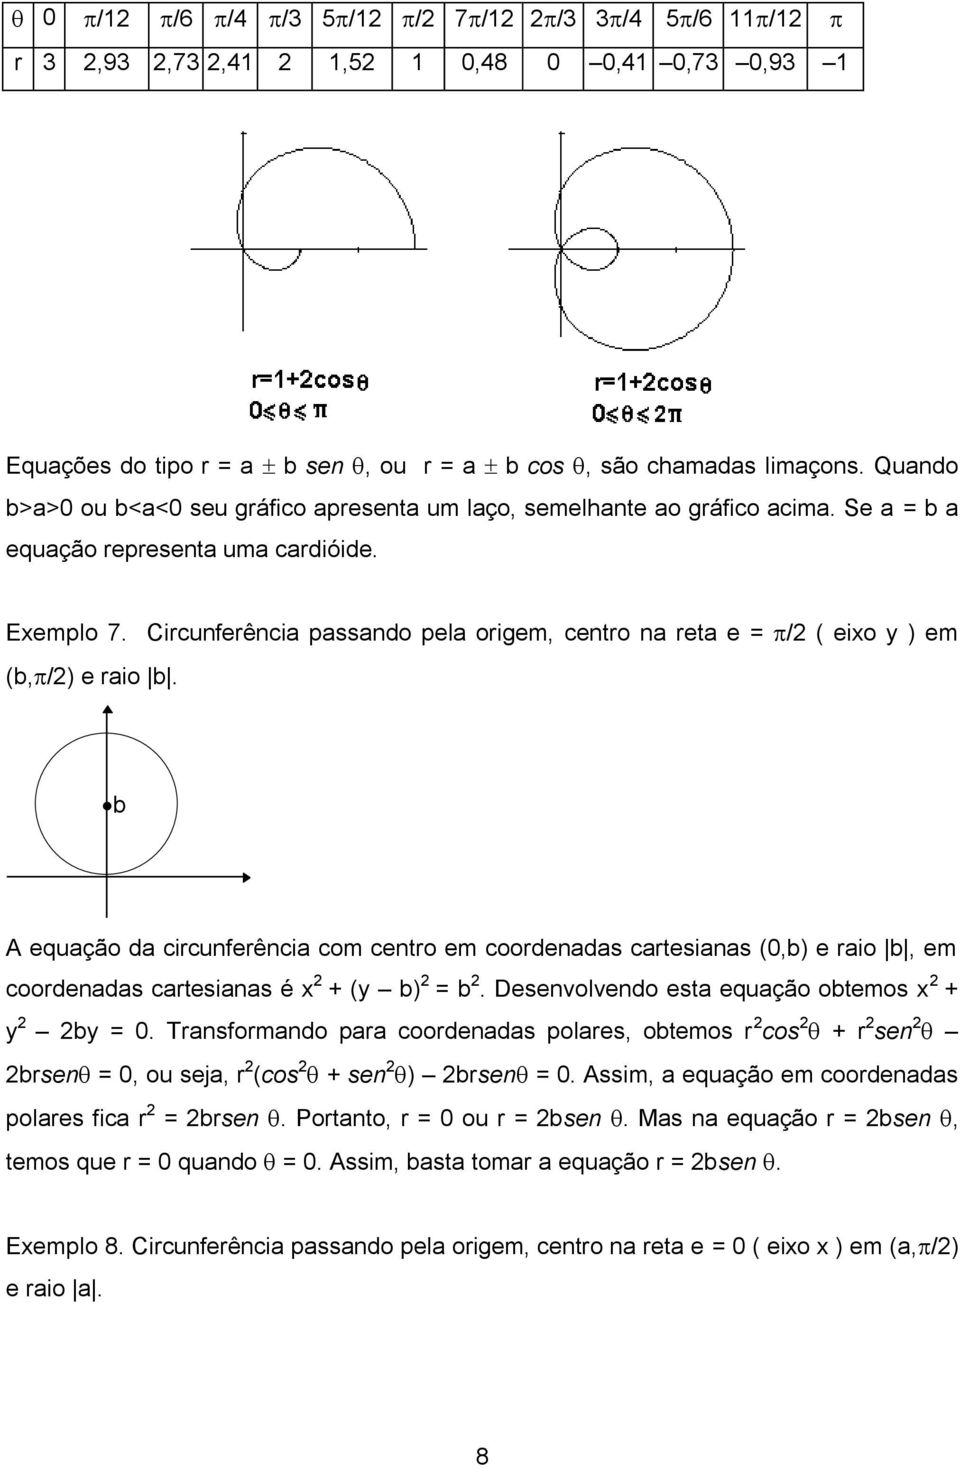 Circunferência passando pela origem, centro na reta e = / ( eixo y ) em (b, /) e raio b.